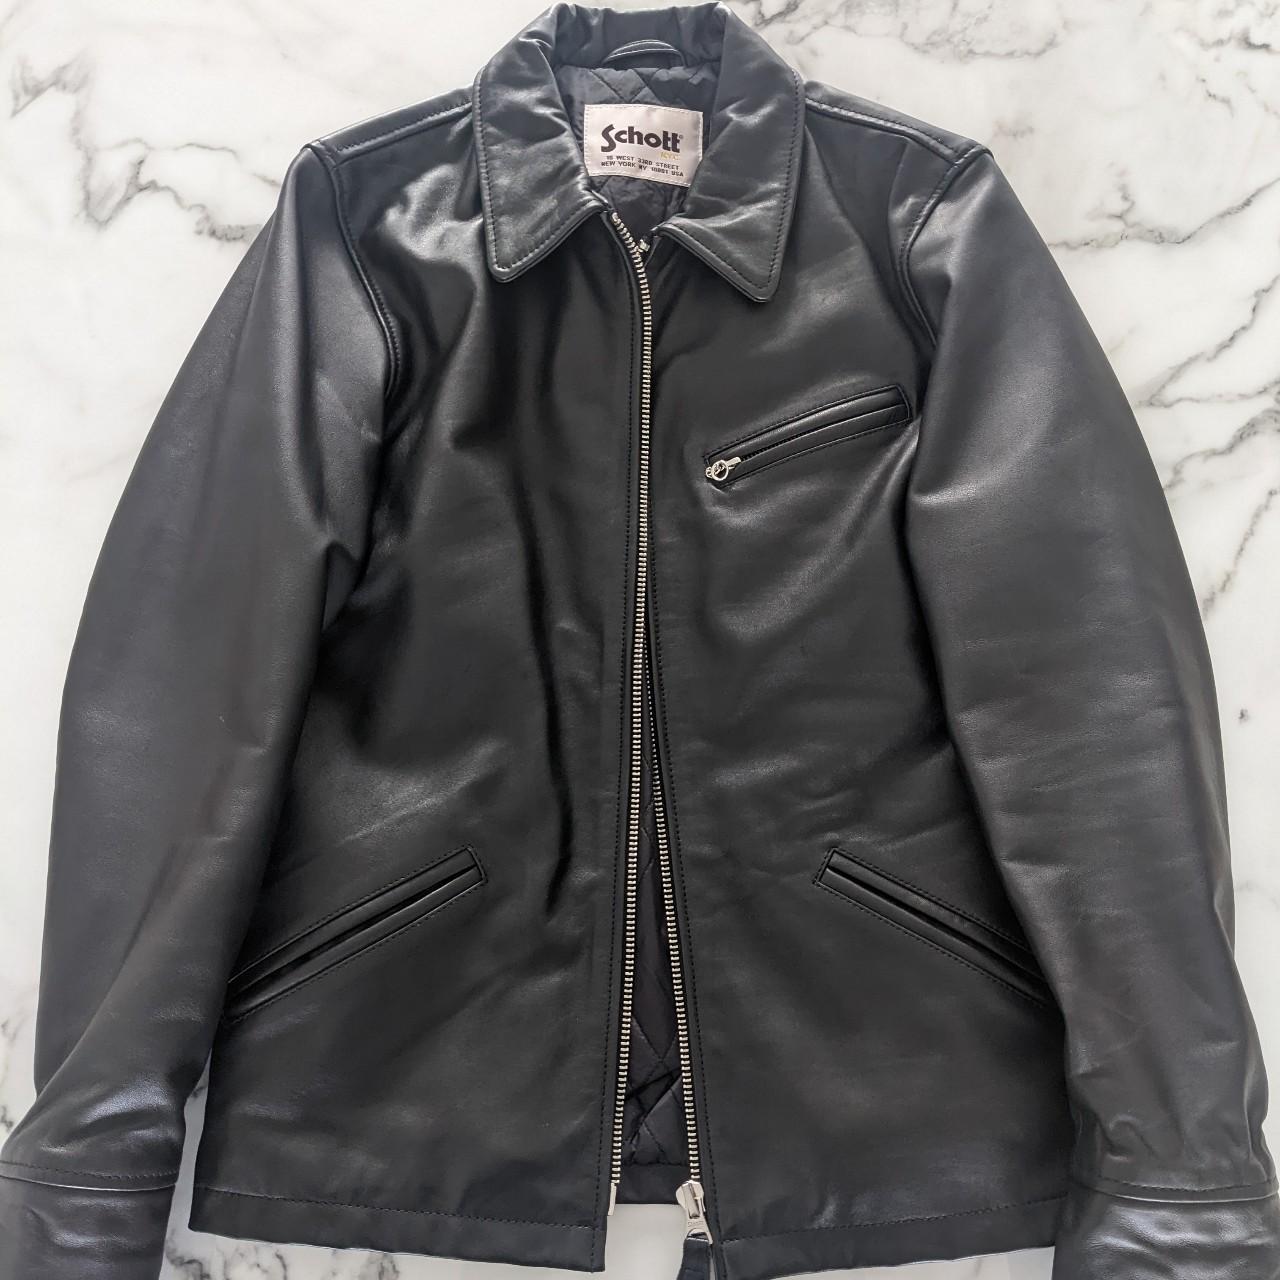 Schott leather jacket in black Size Small Runs a... - Depop